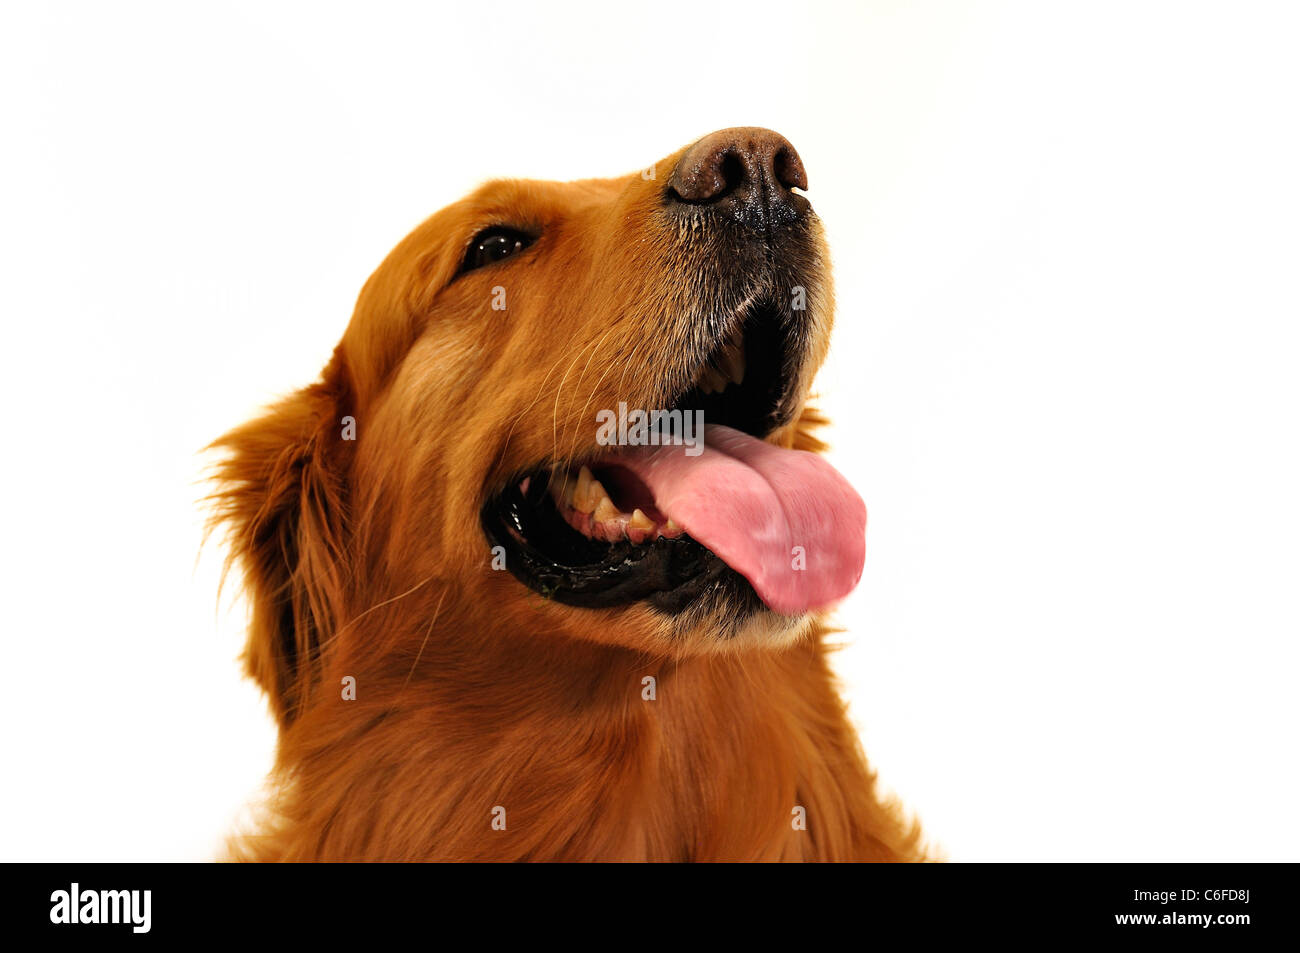 Golden retriever dog visage très expressif. Regardez le côté. Banque D'Images